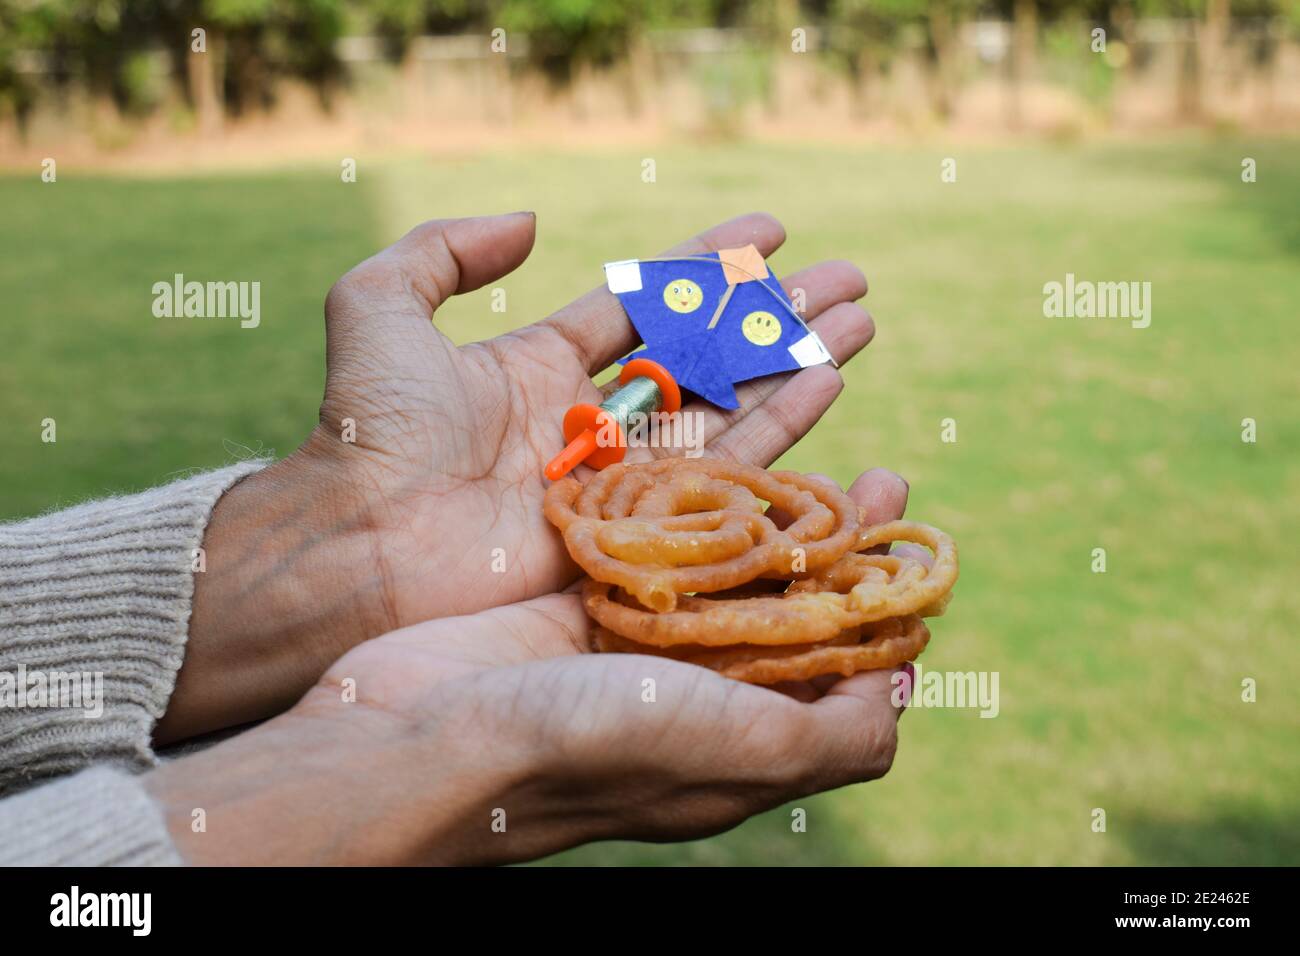 carino kite giocattolo in miniatura con carino spool giocattolo in miniatura manjha nel parco. In occasione di kite flying festival di uttarayan o makar sankranti festivalJale Foto Stock